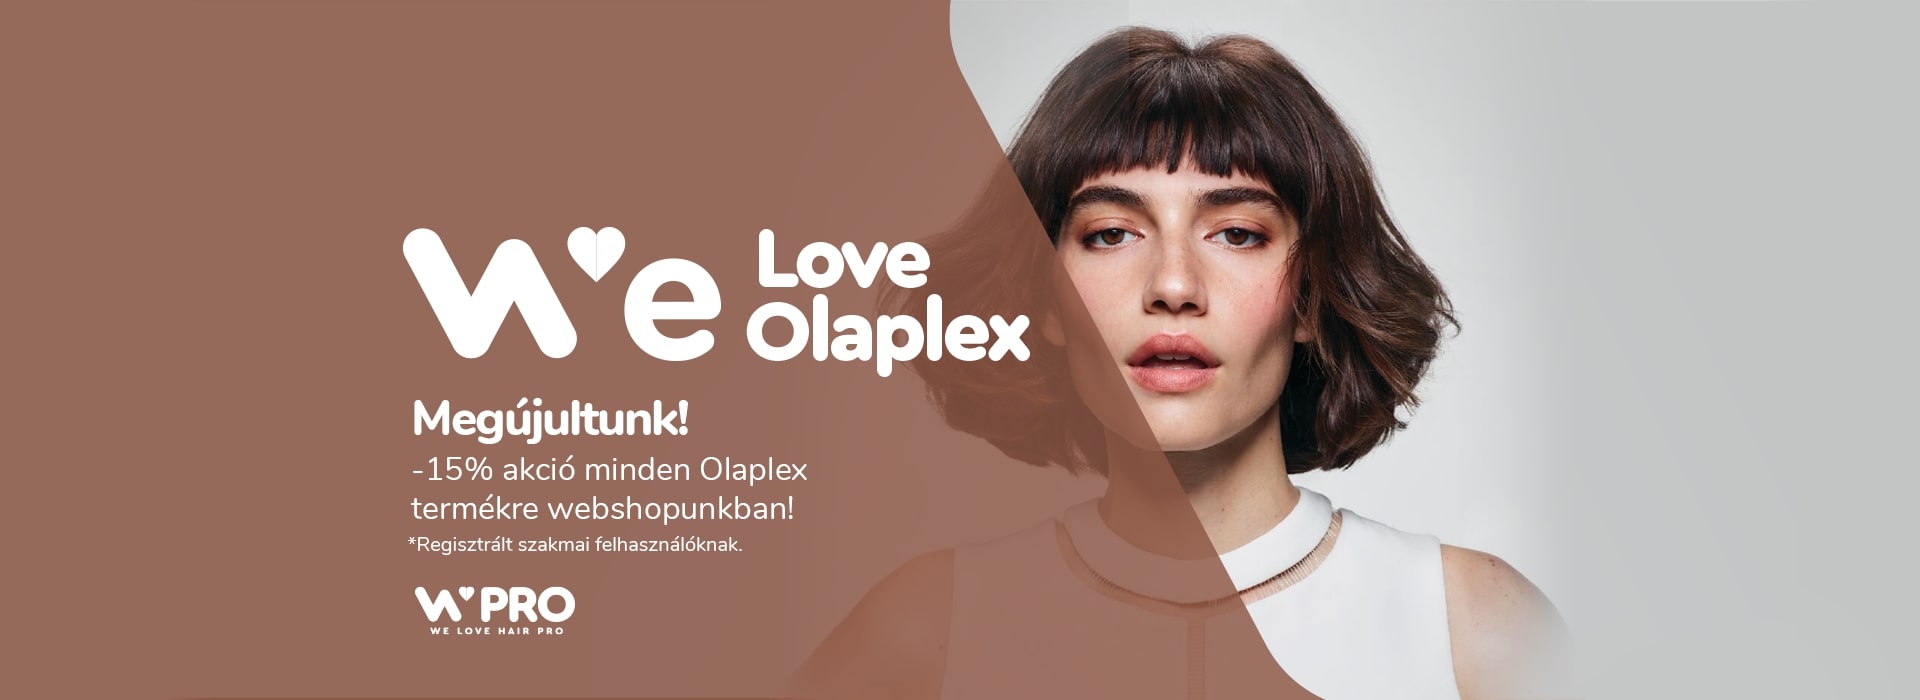 Megújultunk! -15% akció minden Olaplex termékre webshopunkban!